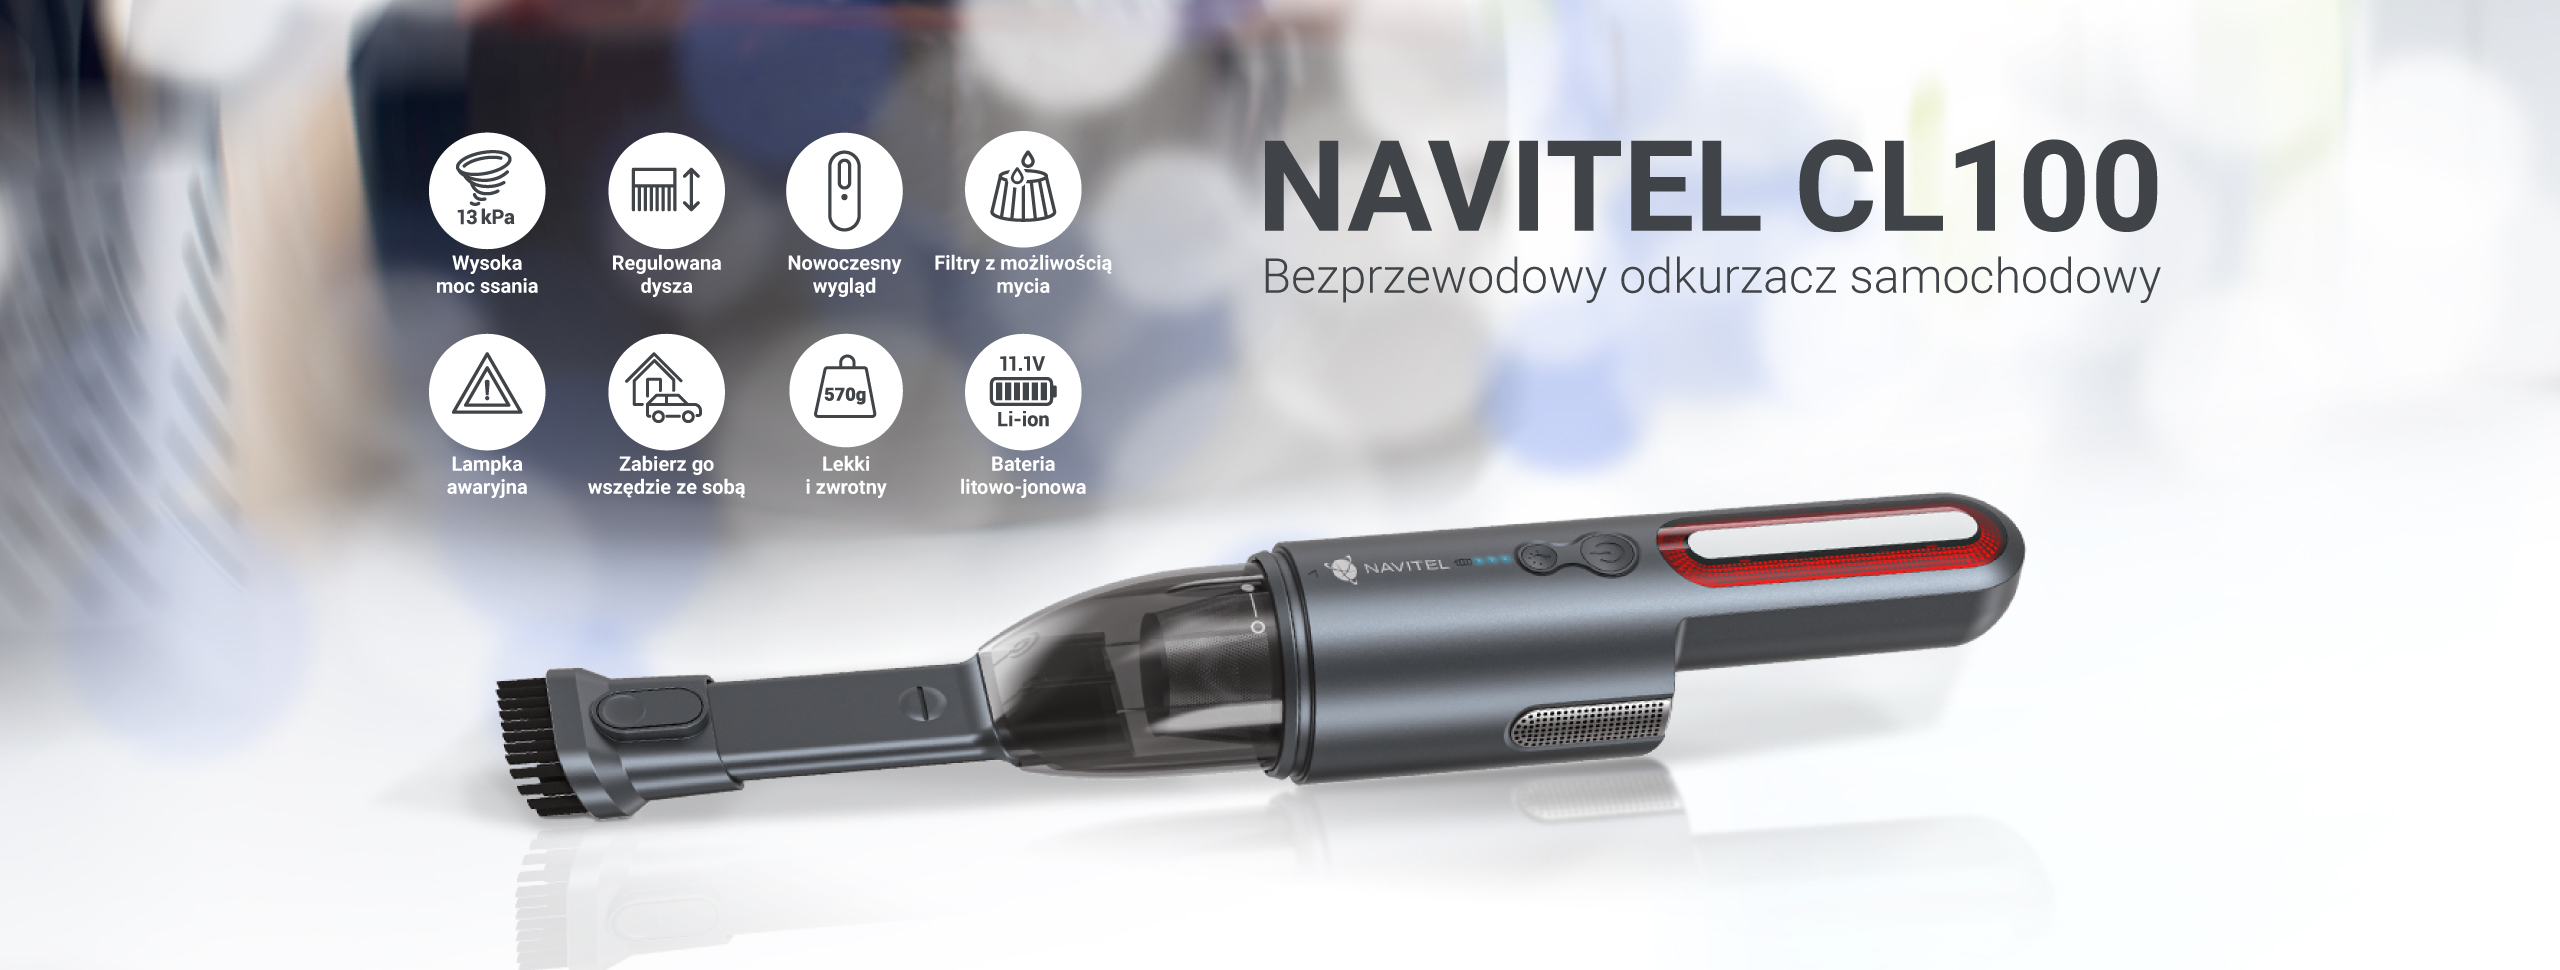 NAVITEL CL100 – bezprzewodowy odkurzacz samochodowy z zaawansowanym systemem filtracji HEPA, potężnym silnikiem i latarką